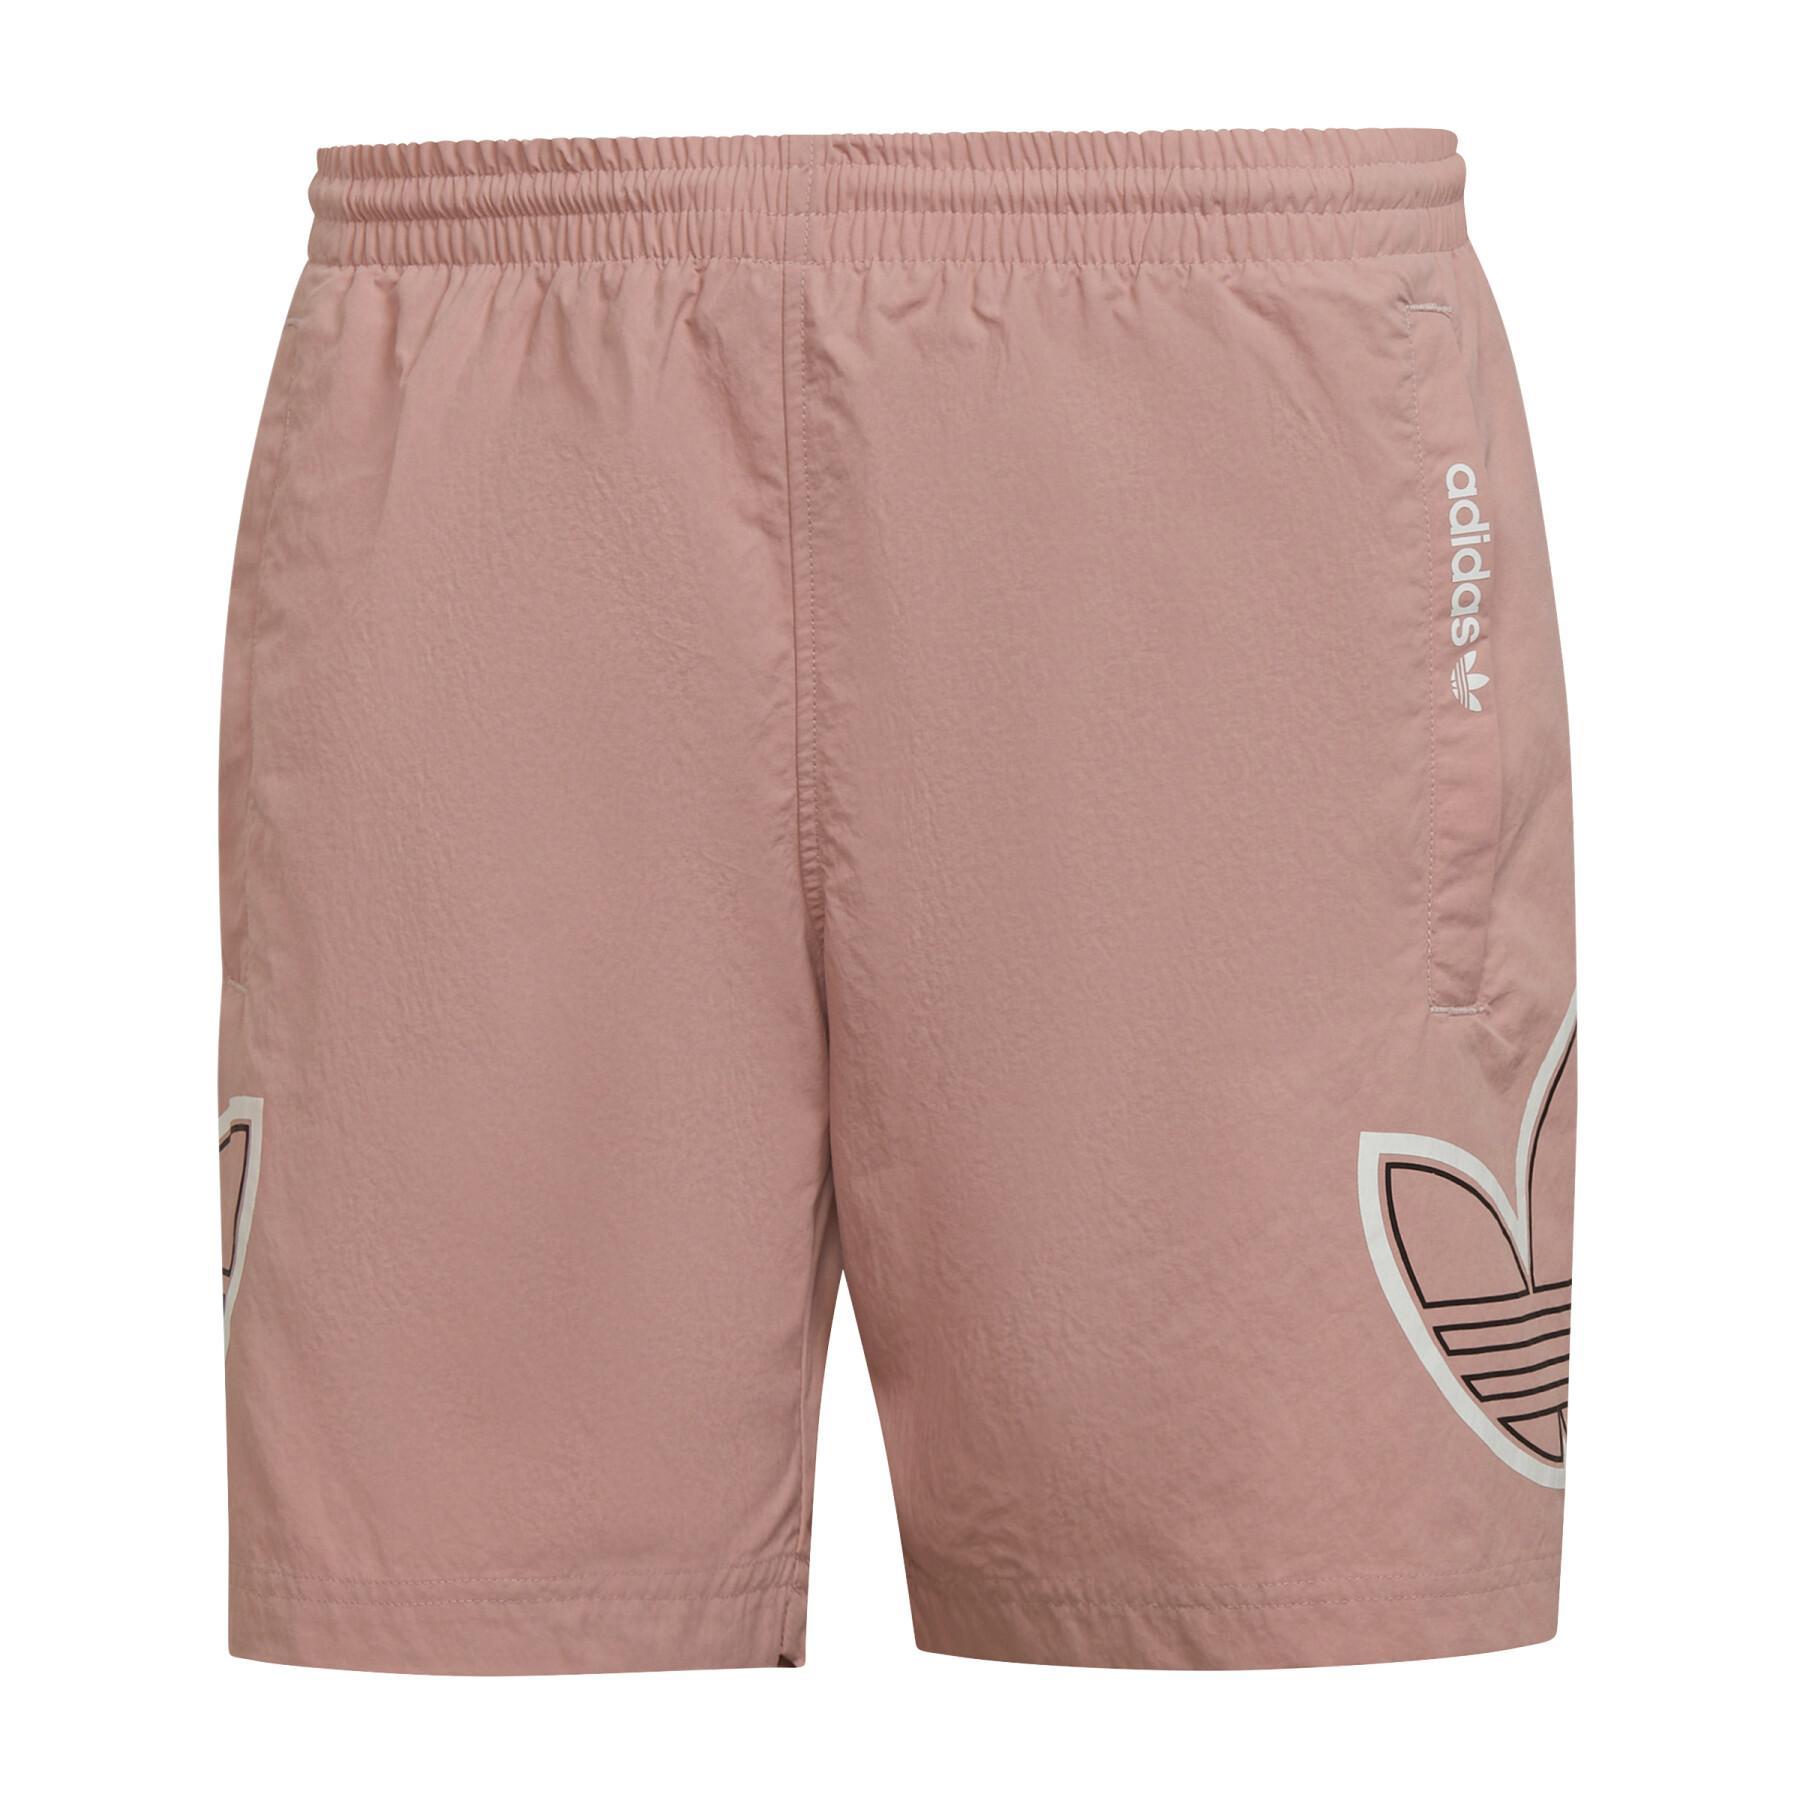 Swim shorts adidas Originals SPRT